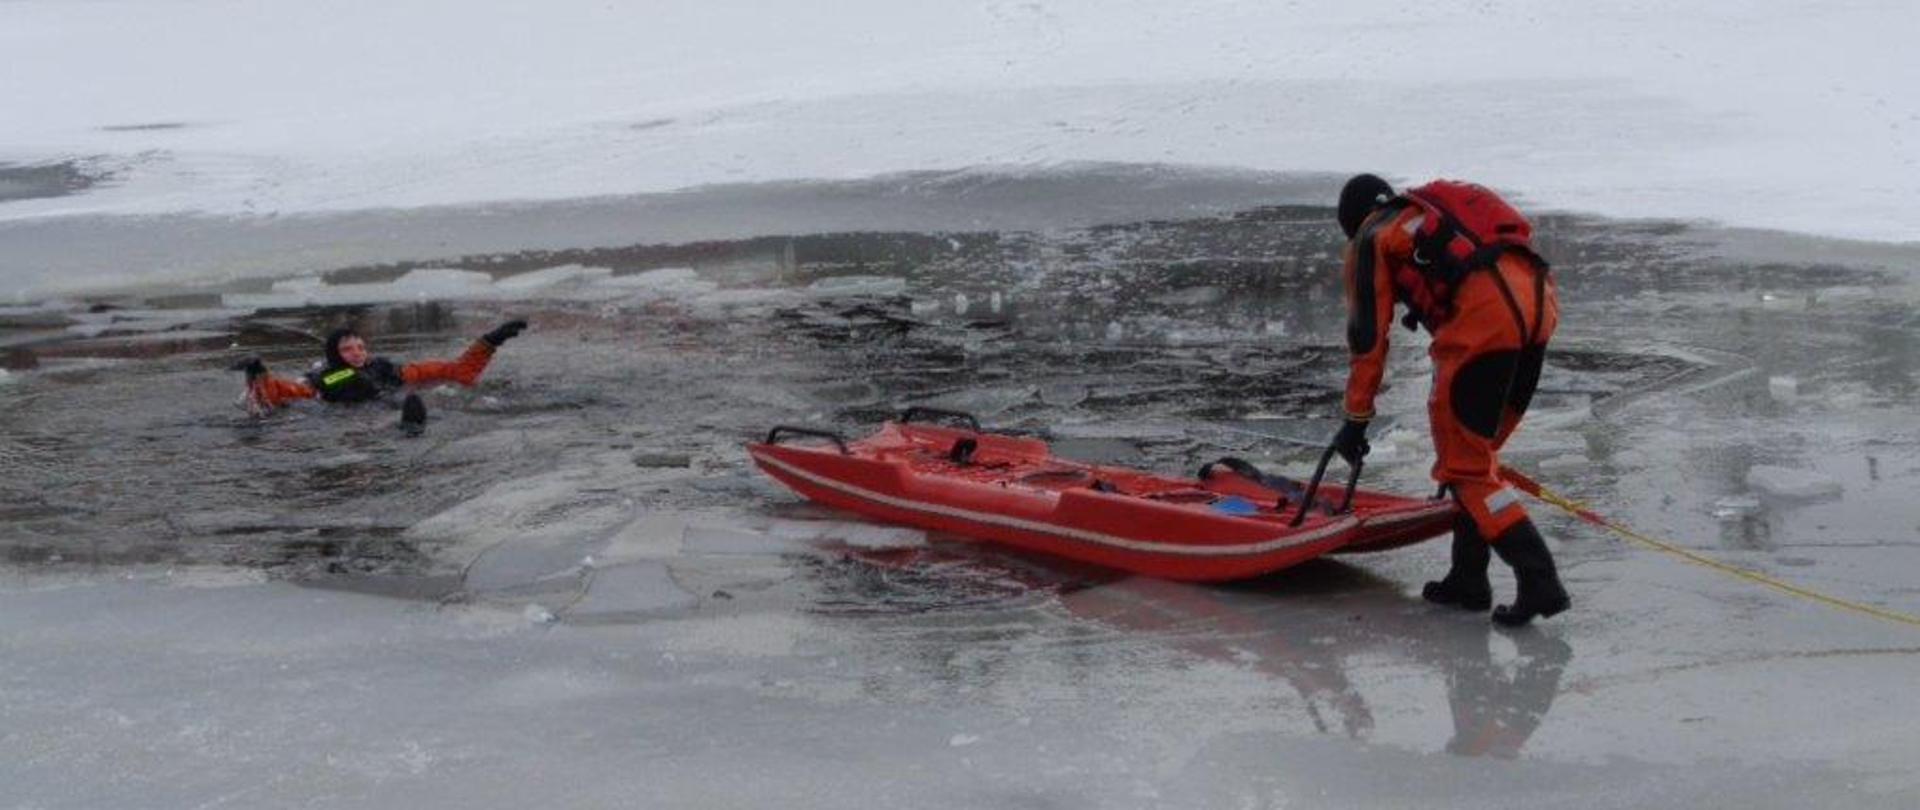 Próba podjęcia osoby poszkodowanej na lodzie przy pomocy sań lodowych, strażaka w zabezpieczeniu.